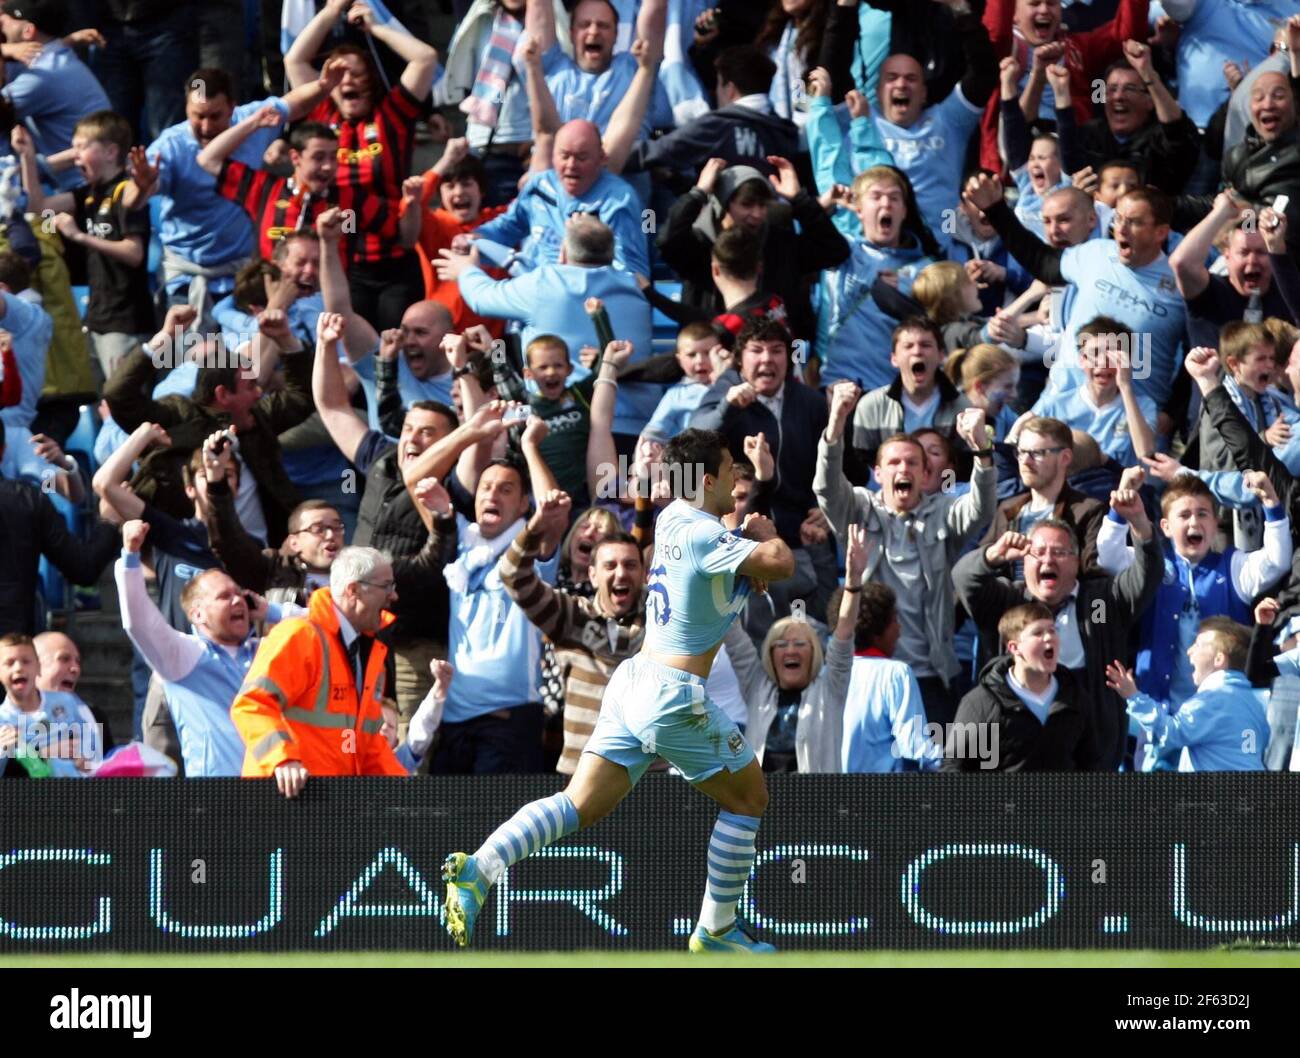 File photo datato 13-05-2012 del Sergio Aguero di Manchester City festeggia il terzo gol durante la partita Barclays Premier League all'Etihad Stadium di Manchester. Data di emissione: Lunedì 29 marzo 2021. Foto Stock